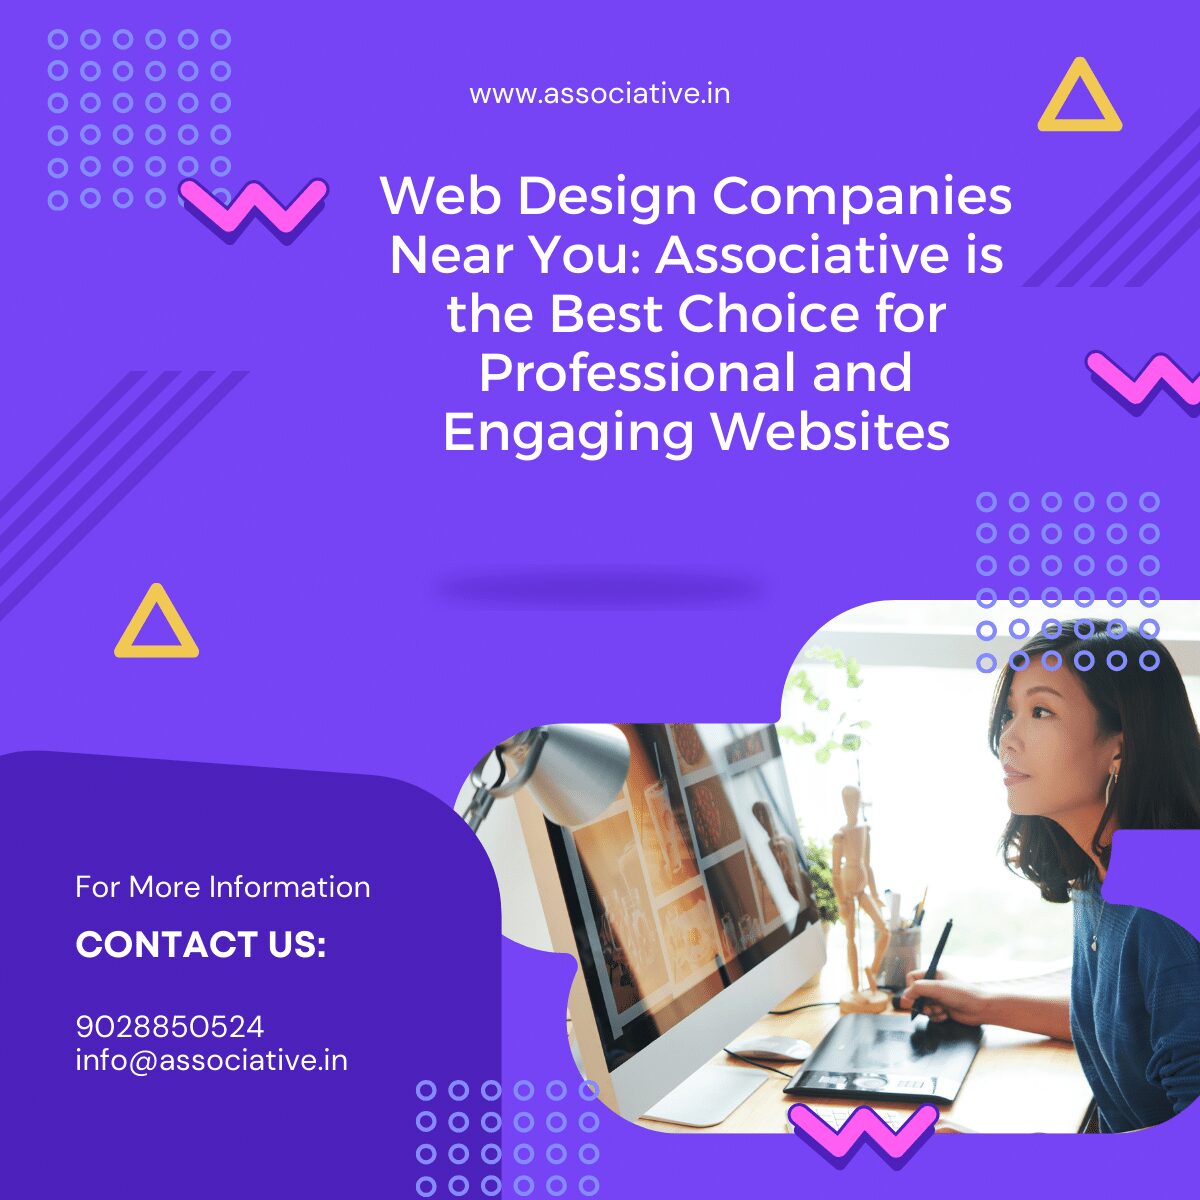 Web Design Companies Near You: Associative is the Best Choice for Professional and Engaging Websites ज़बरदस्त वेबसाइट, पास में ही: एसोसिएटिव के साथ ज़्यादा लीड और ग्राहक पाएं